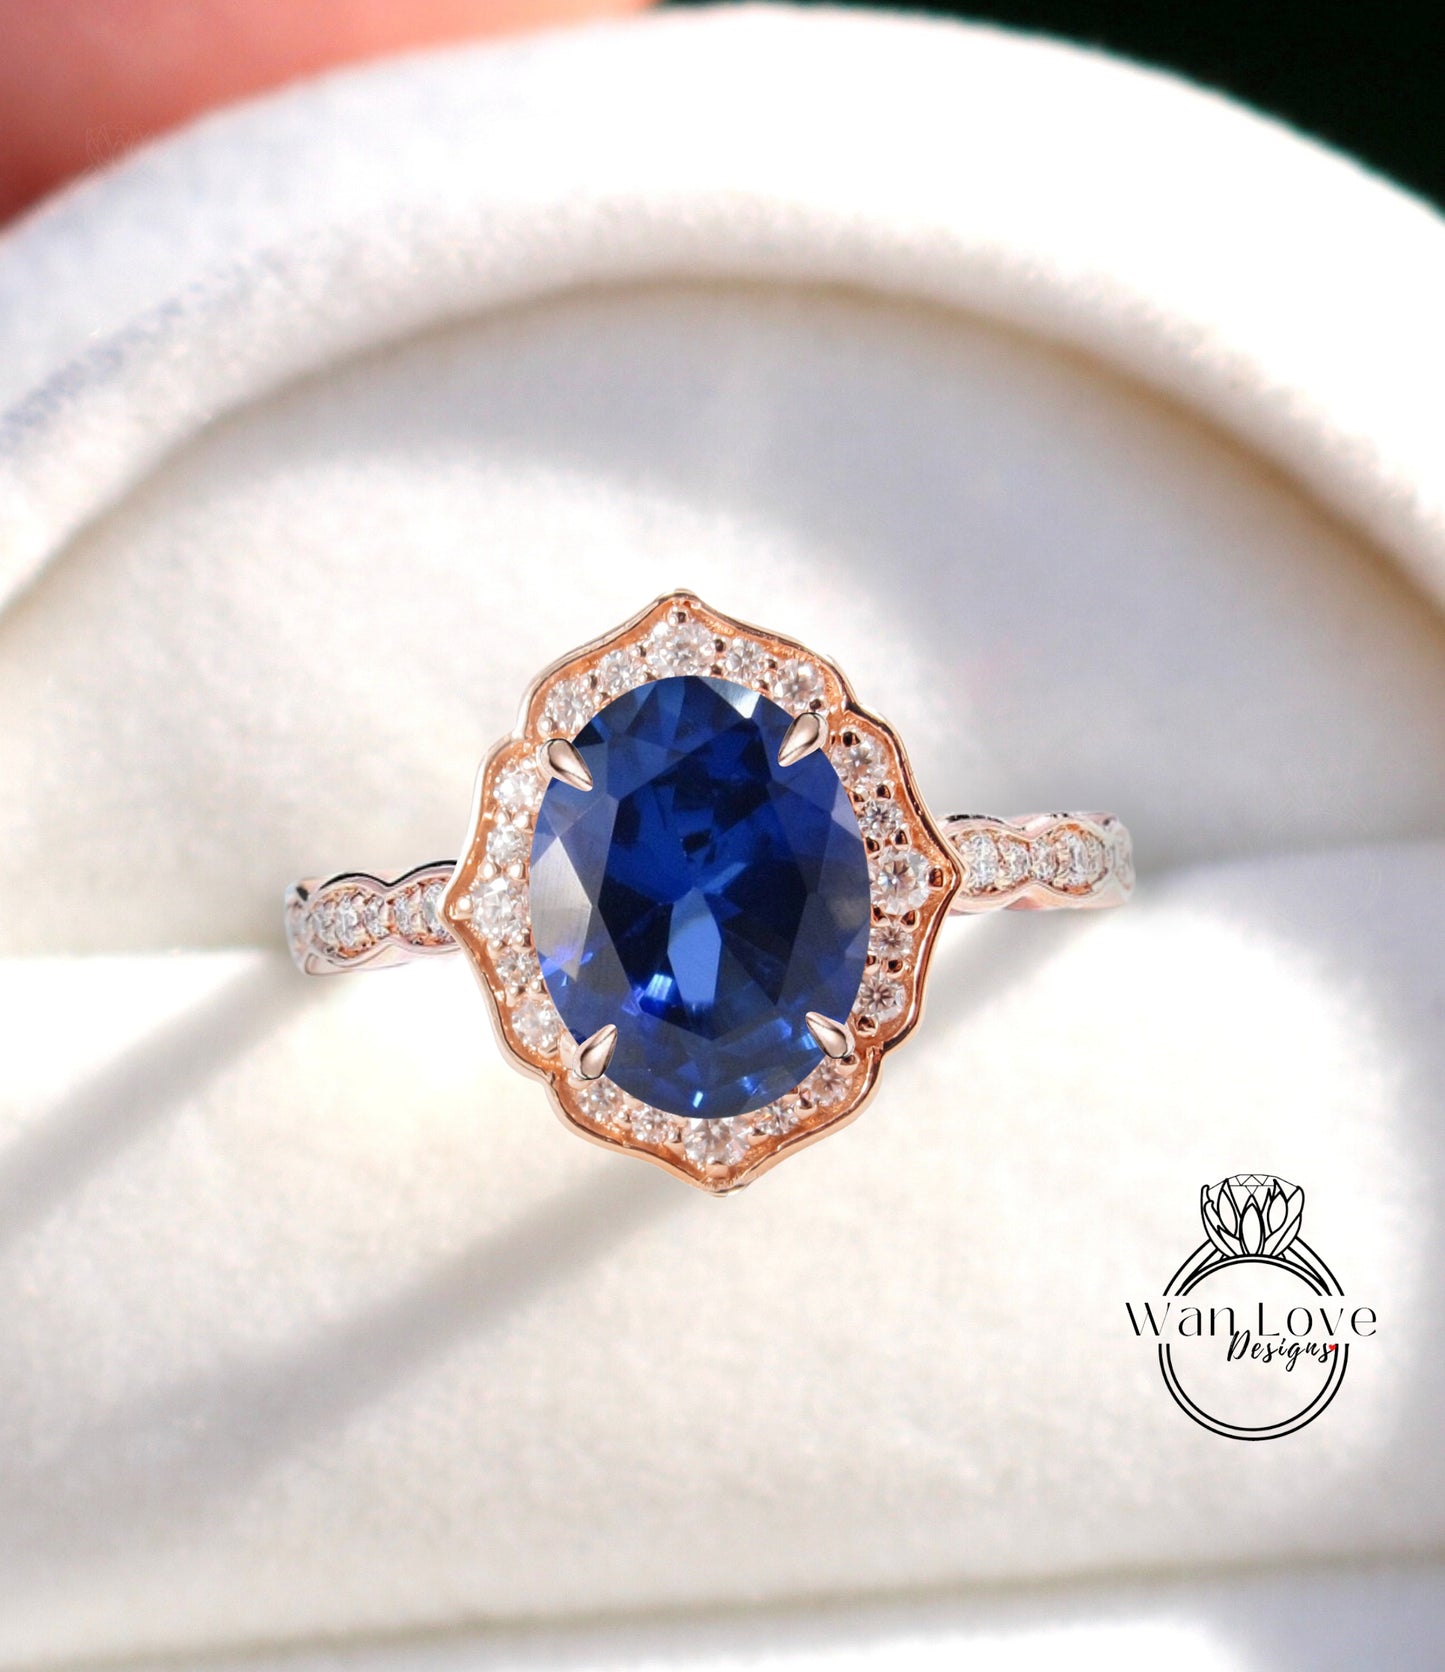 Anello di fidanzamento con zaffiro blu di forma ovale, anello con alone di diamanti, anello smerlato art deco, anello vintage unico, anello in oro rosa, anello anniversario